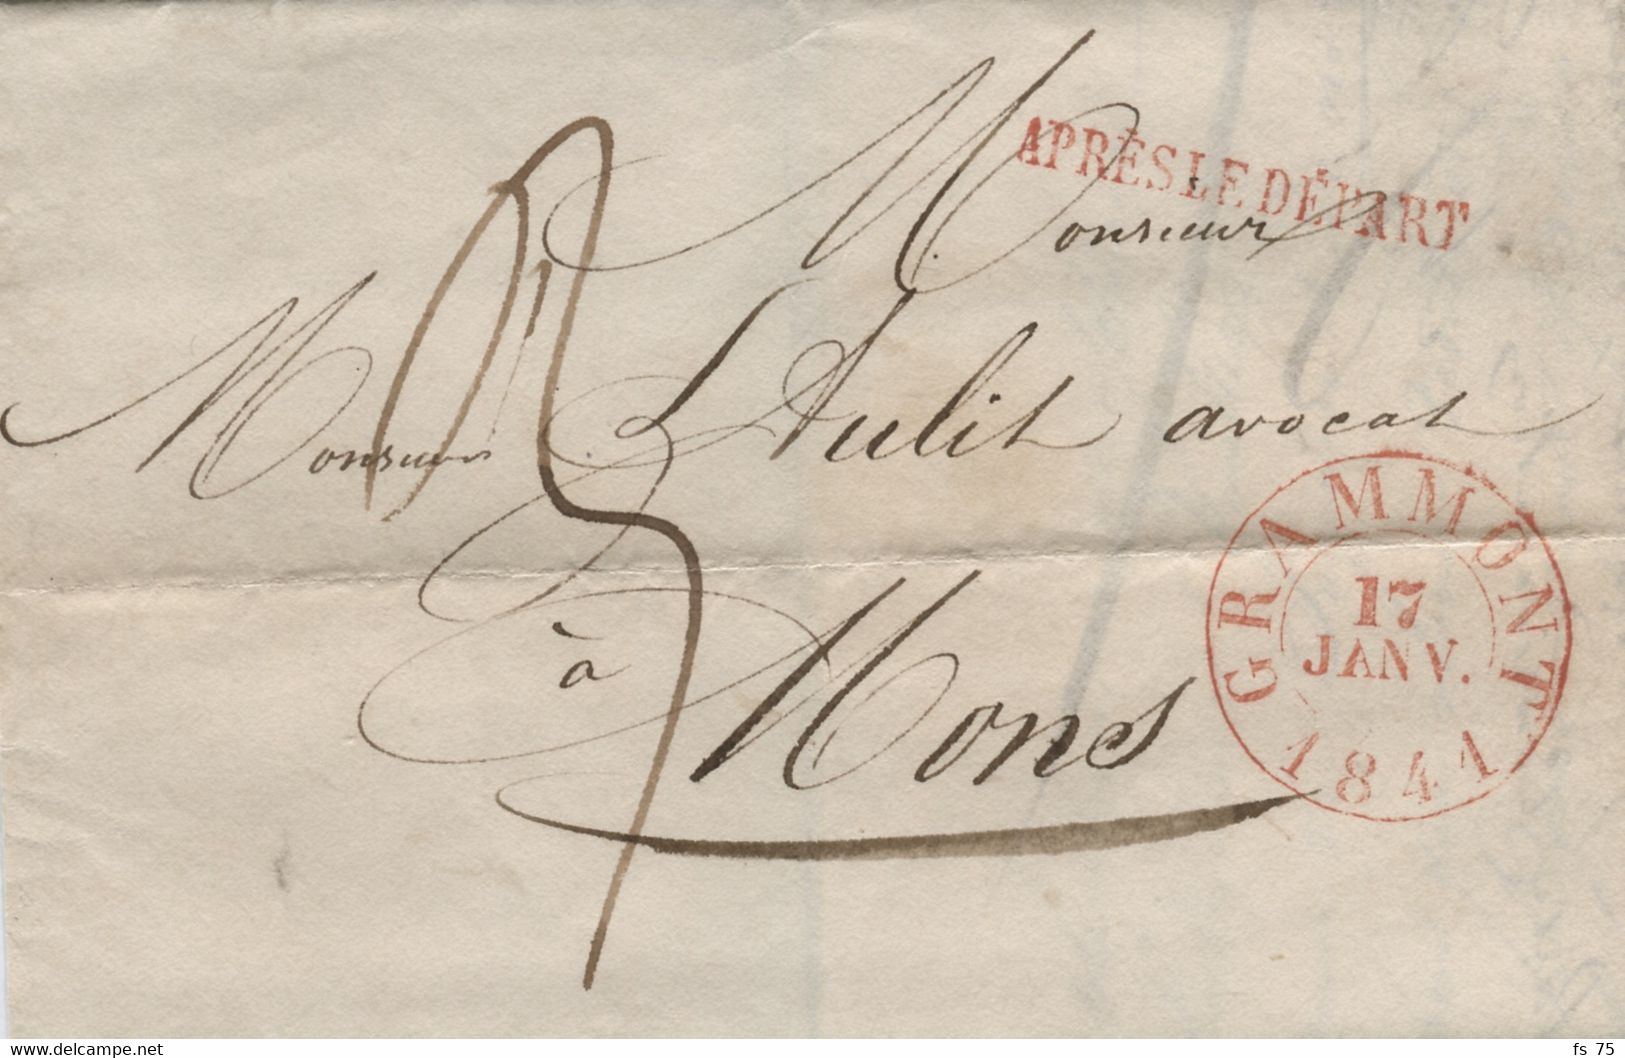 BELGIQUE - GRAMMONT + APRES LE DEPART SUR LETTRE SANS CORRESPONDANCE, 1841 - 1830-1849 (Onafhankelijk België)